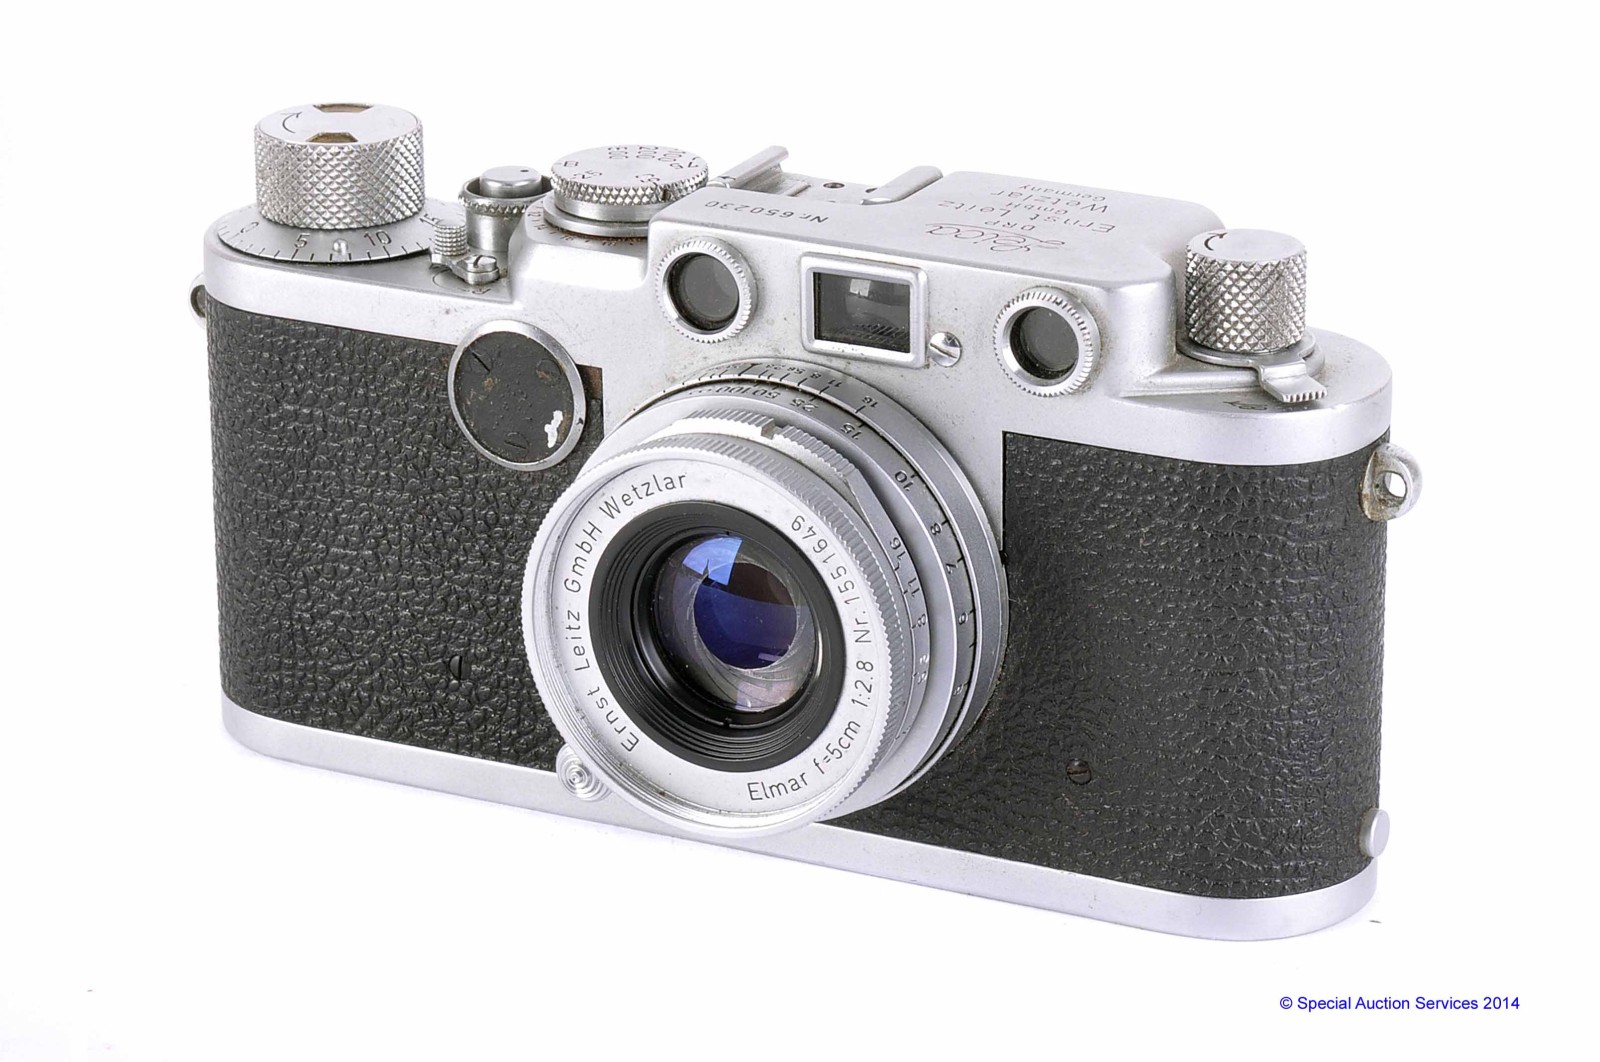 A Leica IIf Red Dial Camera, chrome, serial no. 650230, with Leitz Elmar f/2.8 50mm lens, chrome,